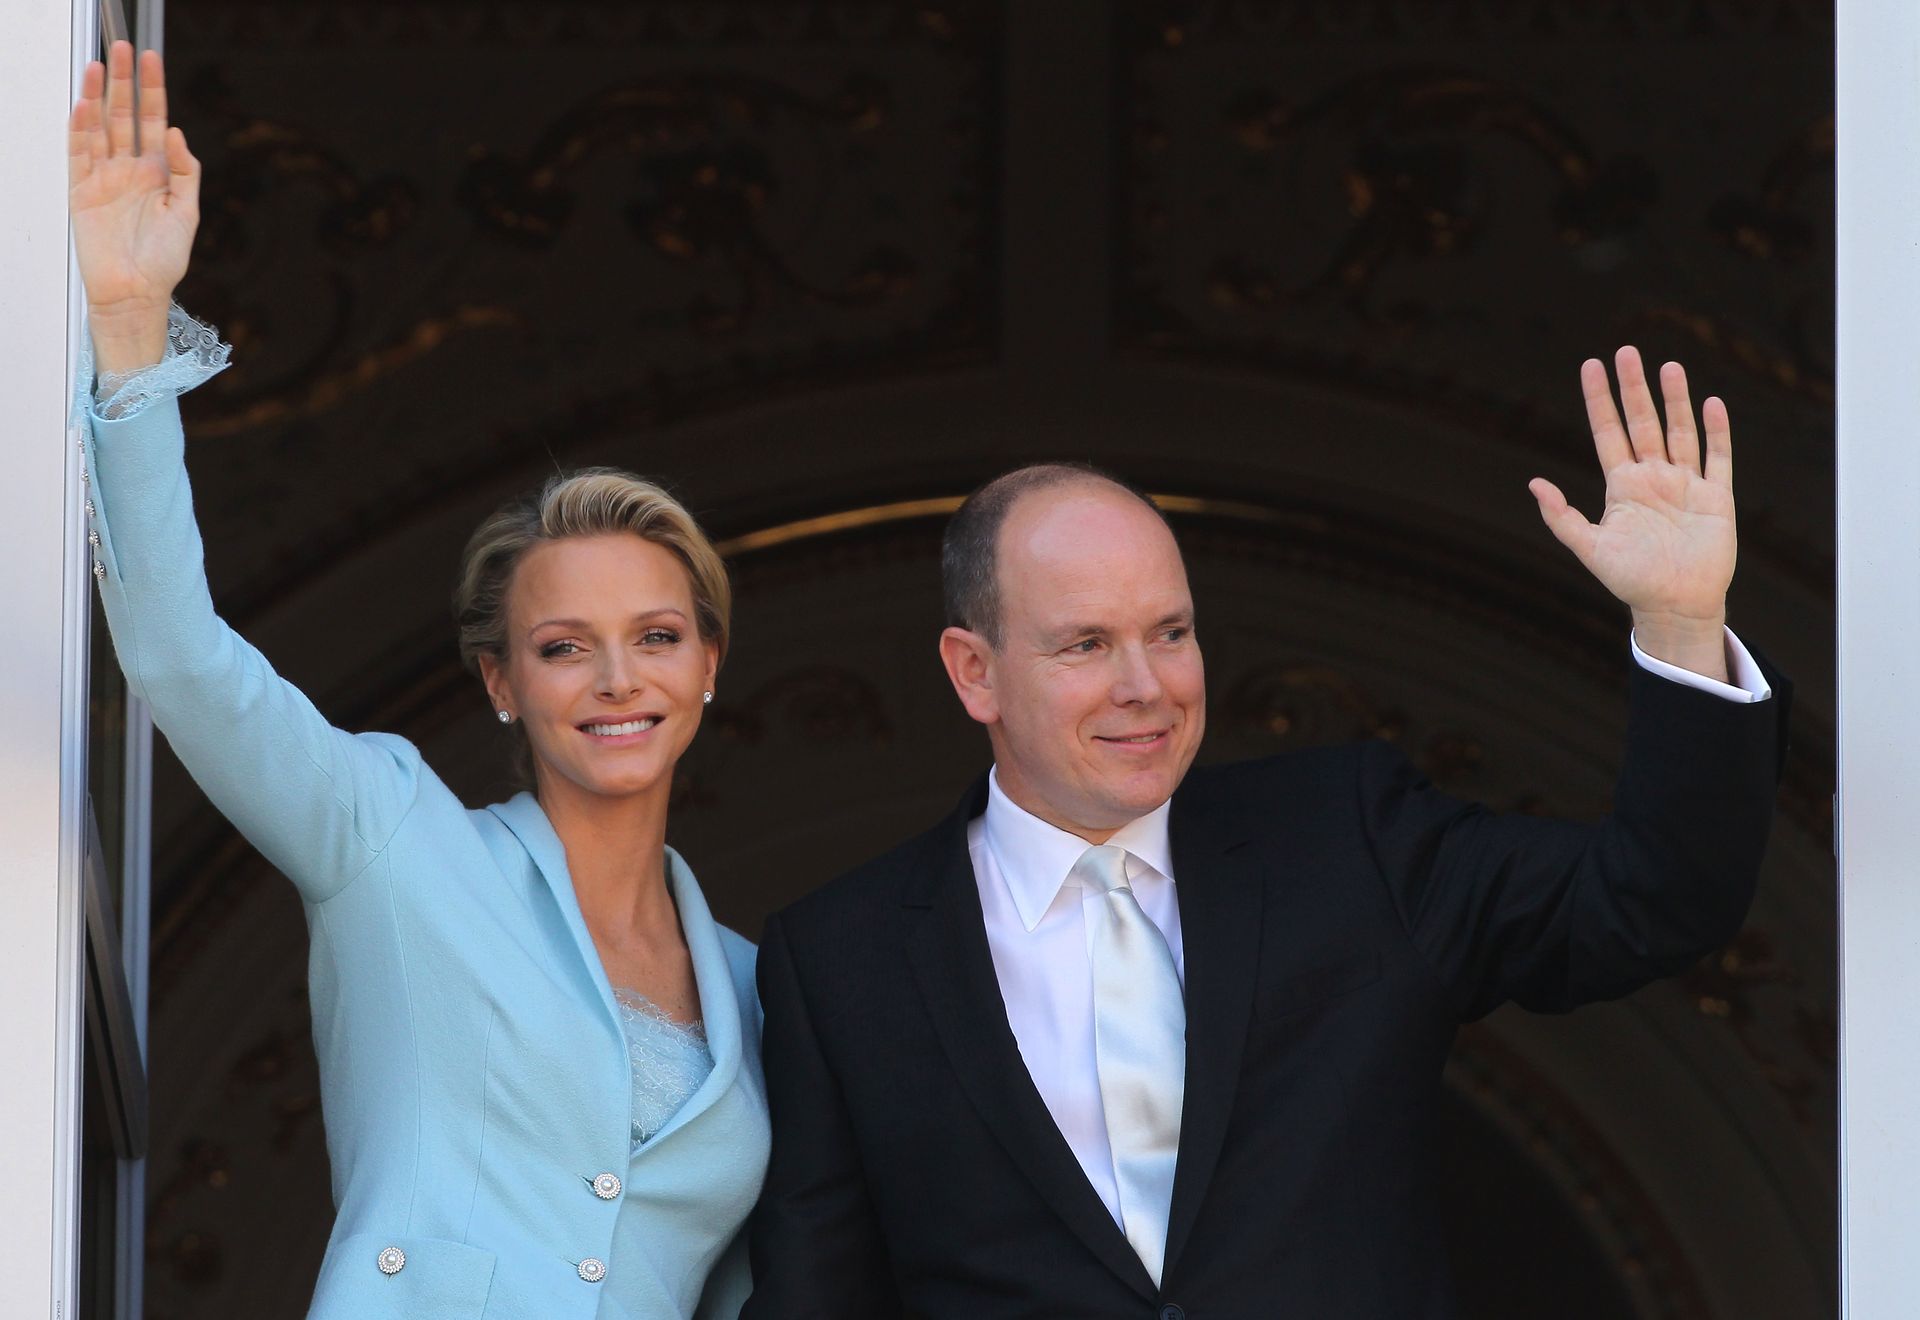 Charlène en Albert na hun burgerlijk huwelijk op het balkon van het prinselijk paleis. Charlène draagt 'Charlene blue', ontworpen door Karl Lagerfeld.